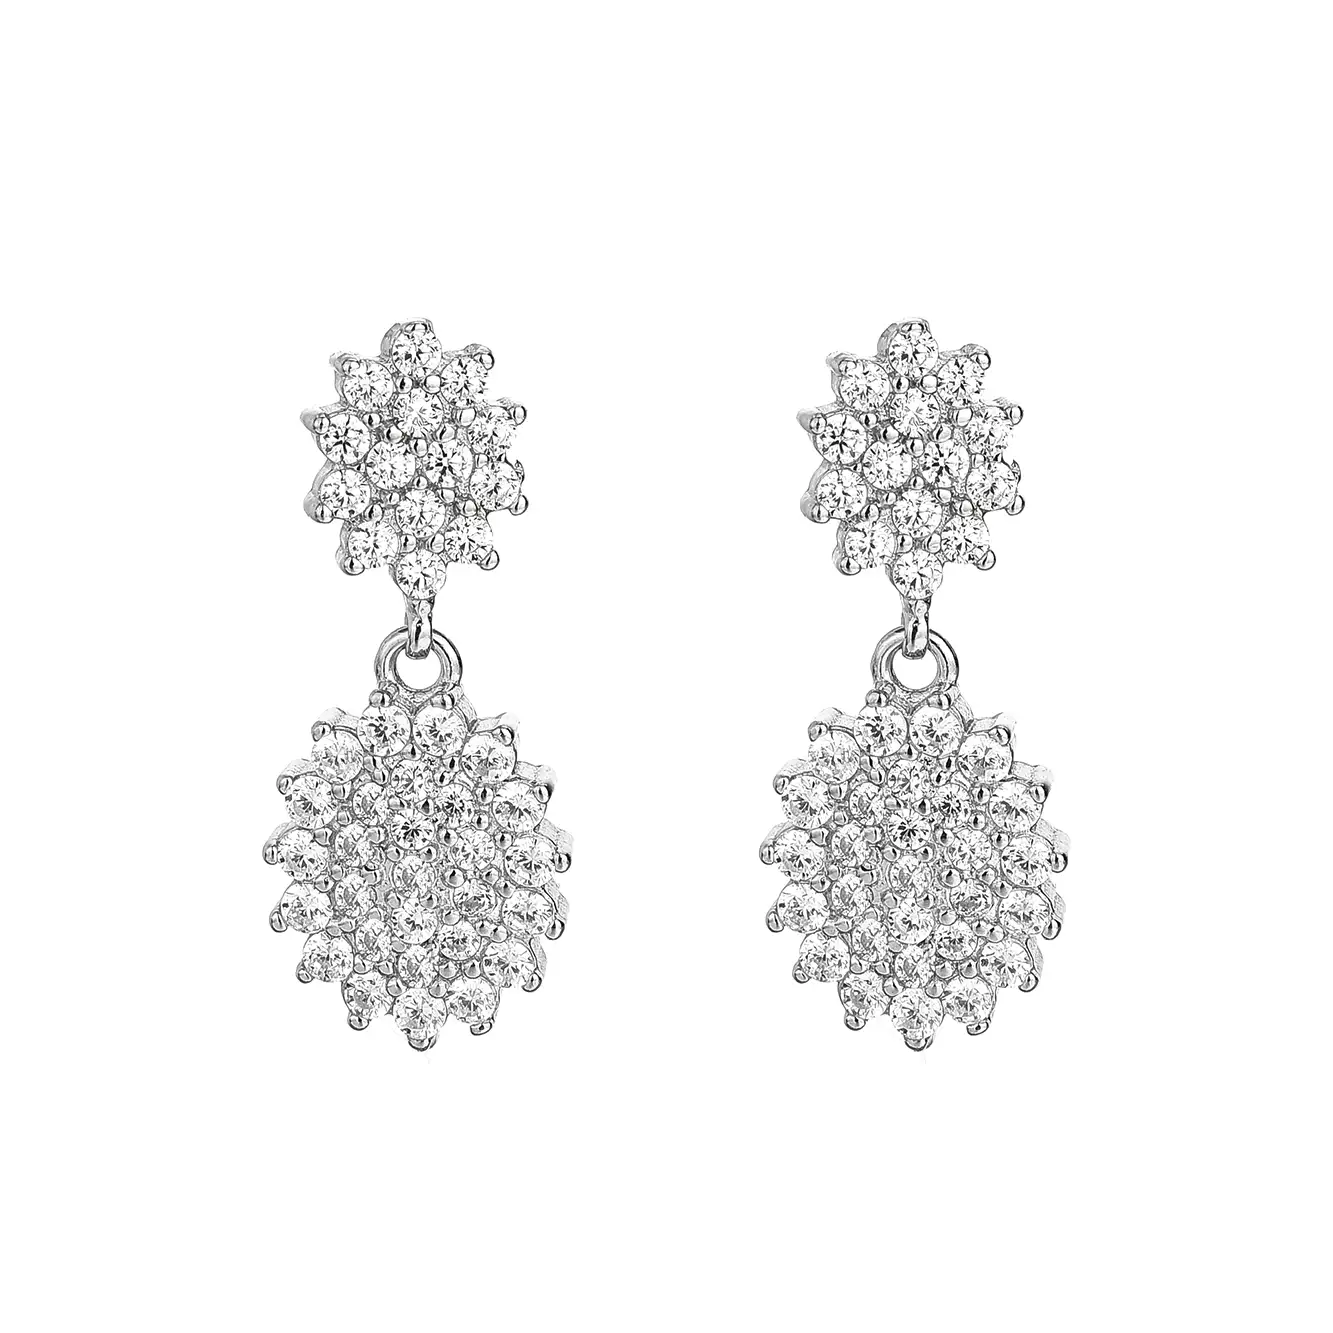 Silver Cubic Zirconia Flower Stud Earring 40200065